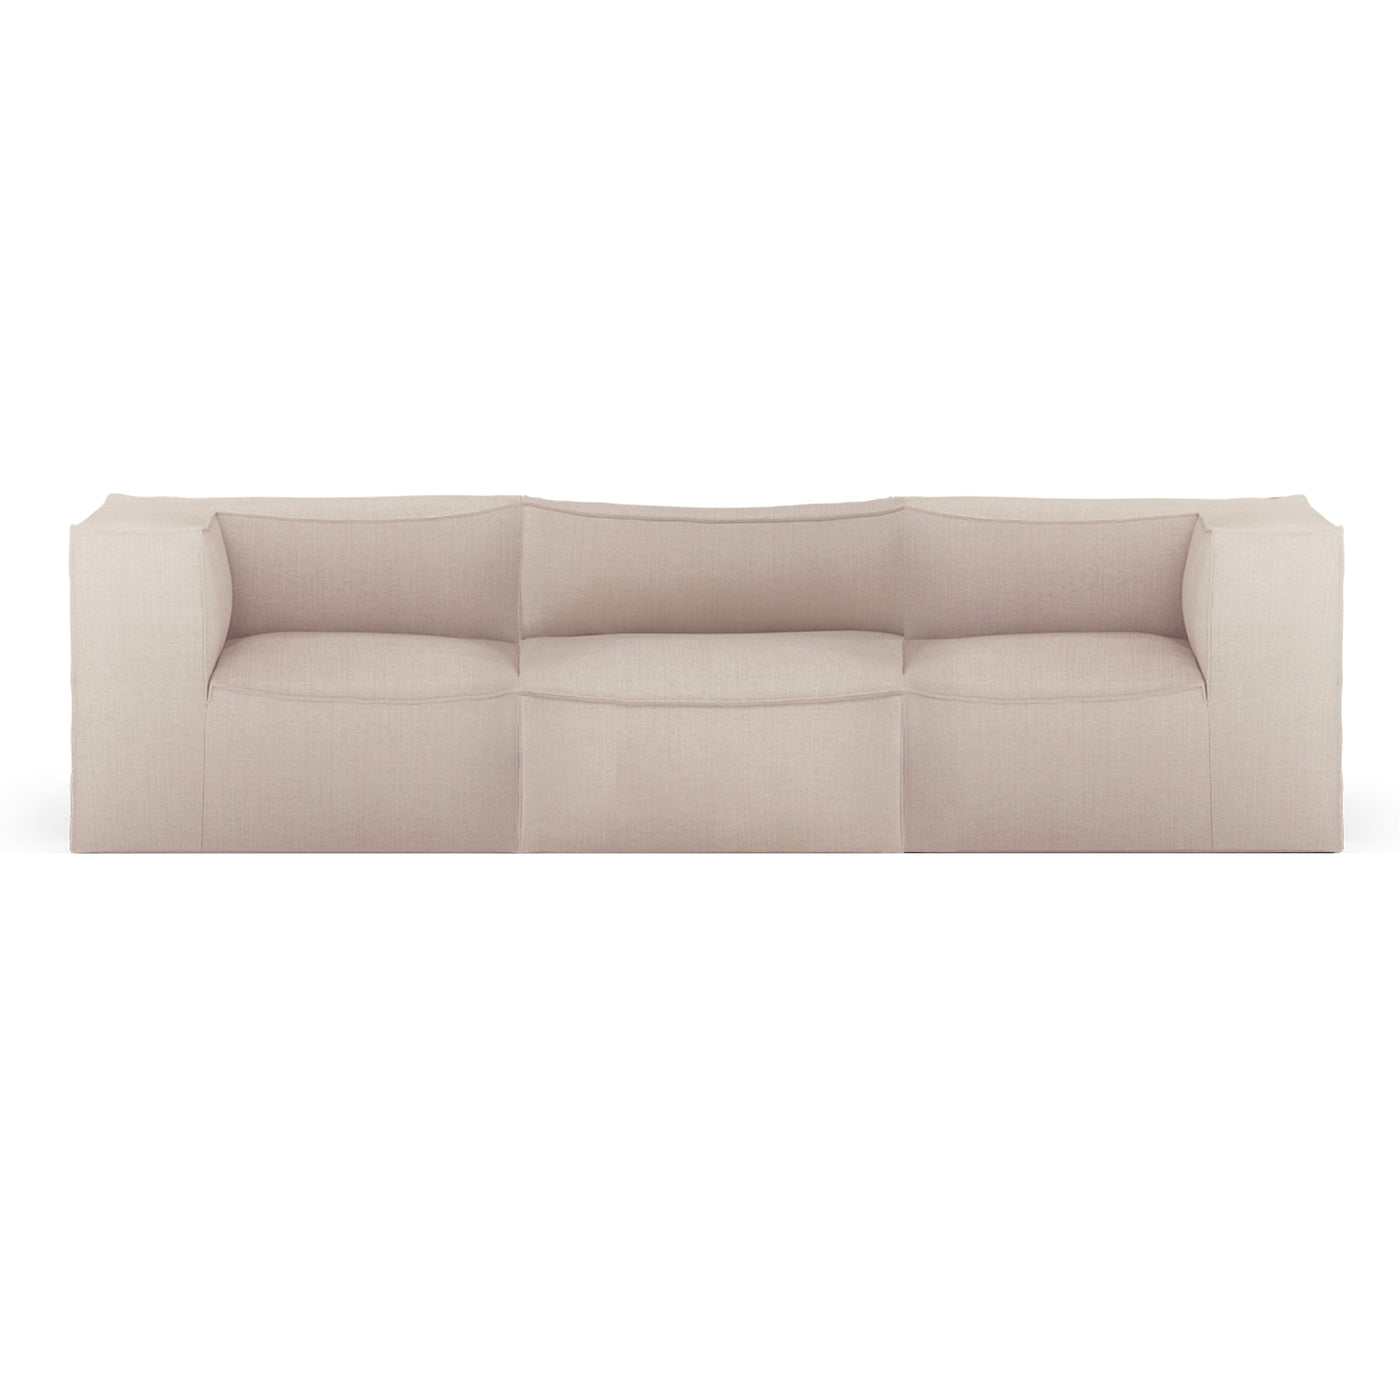 ferm LIVING Catena 3 seater modular sofa. Configuration 1. #colour_linara-sand